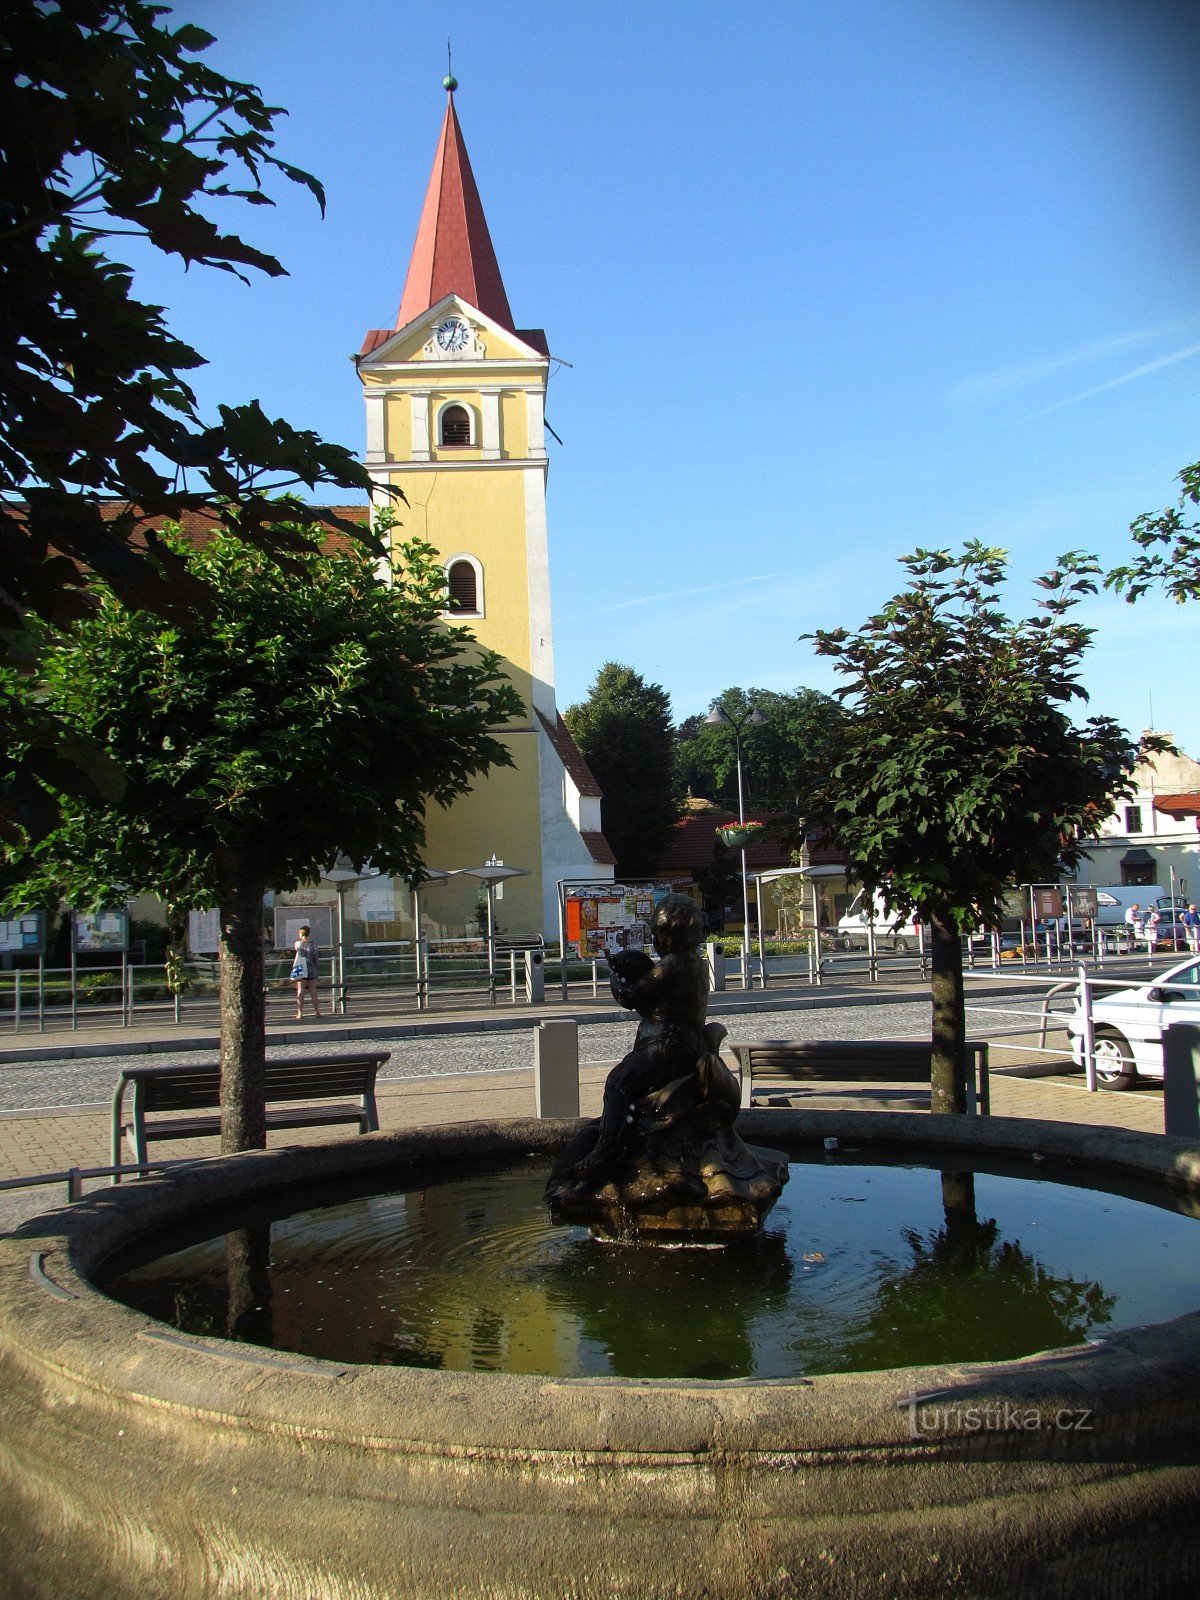 Koryčany - fontän och kyrka